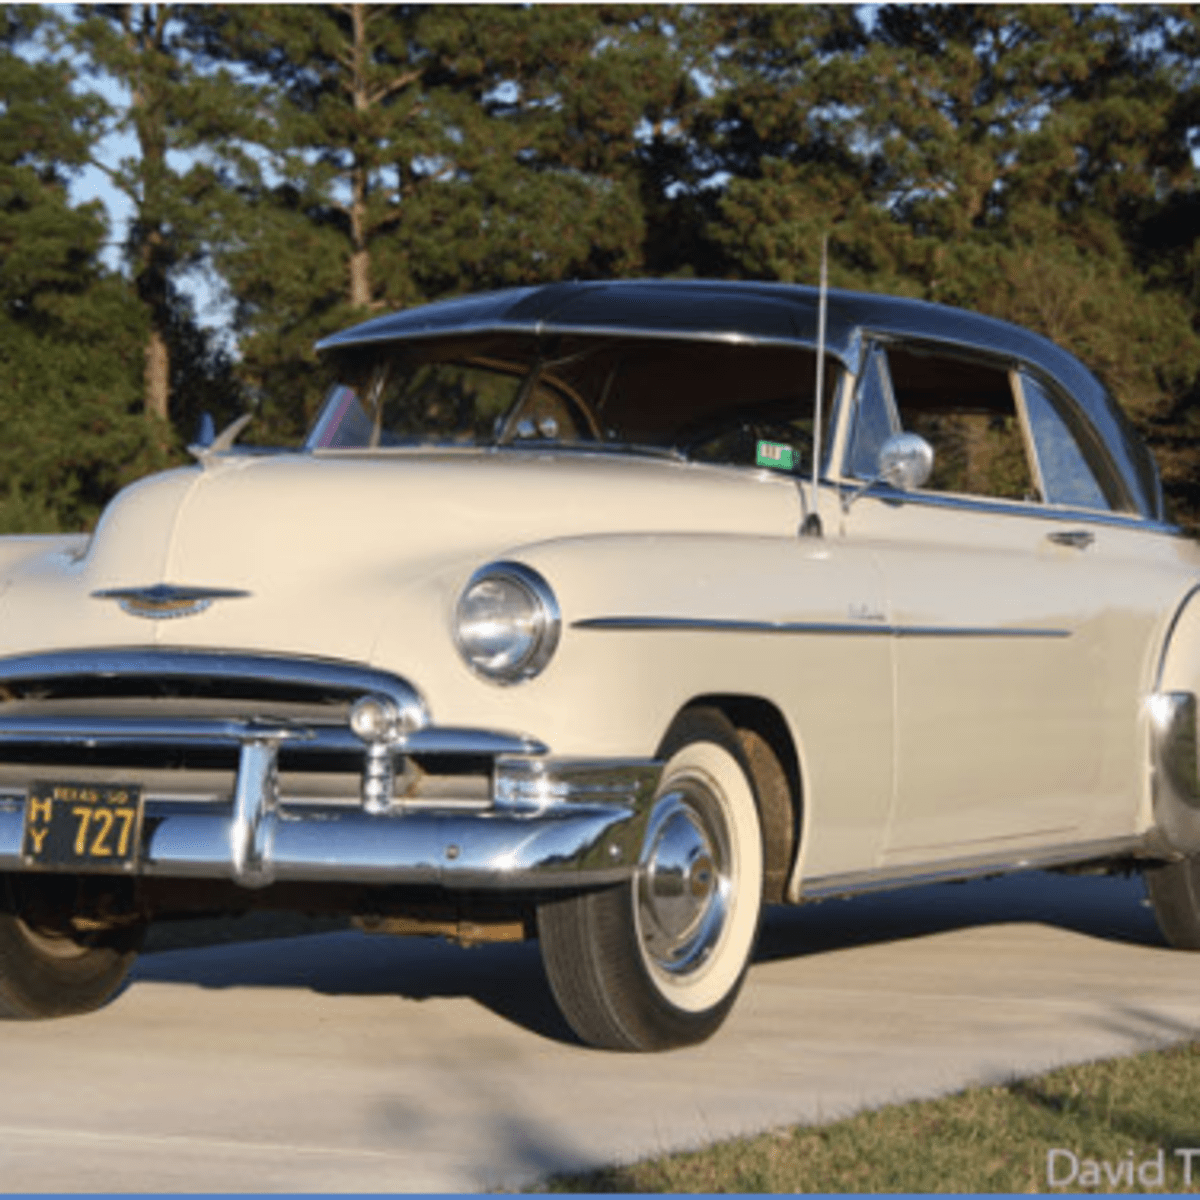 Car of the Week: 1950 Chevrolet Bel Air - Old Cars Weekly